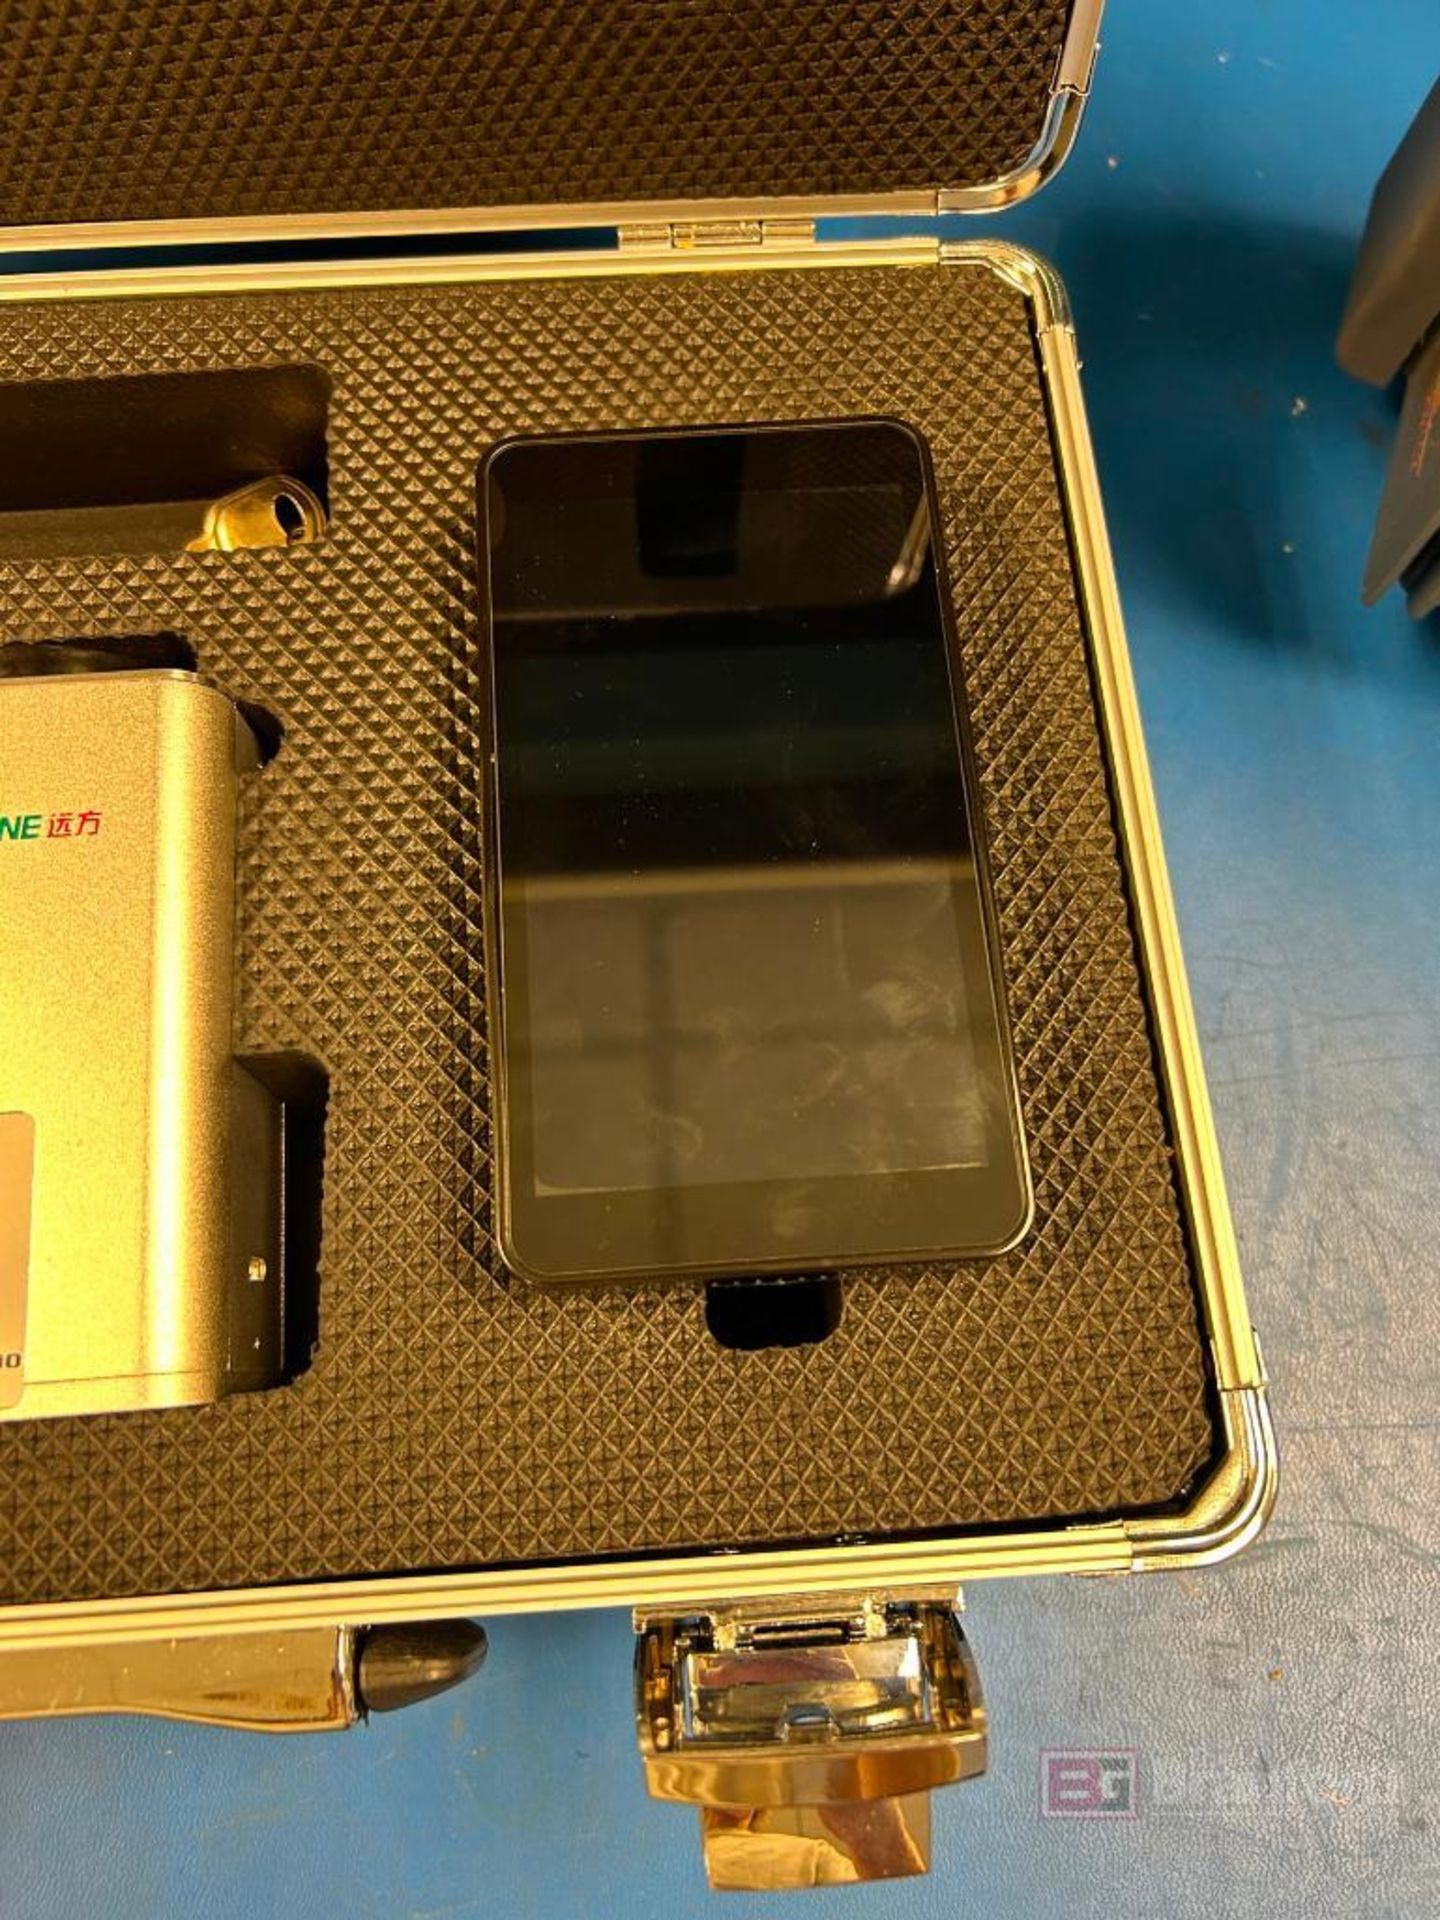 Everfine USR-200 UV Spectral Irradiance Meter - Image 4 of 5